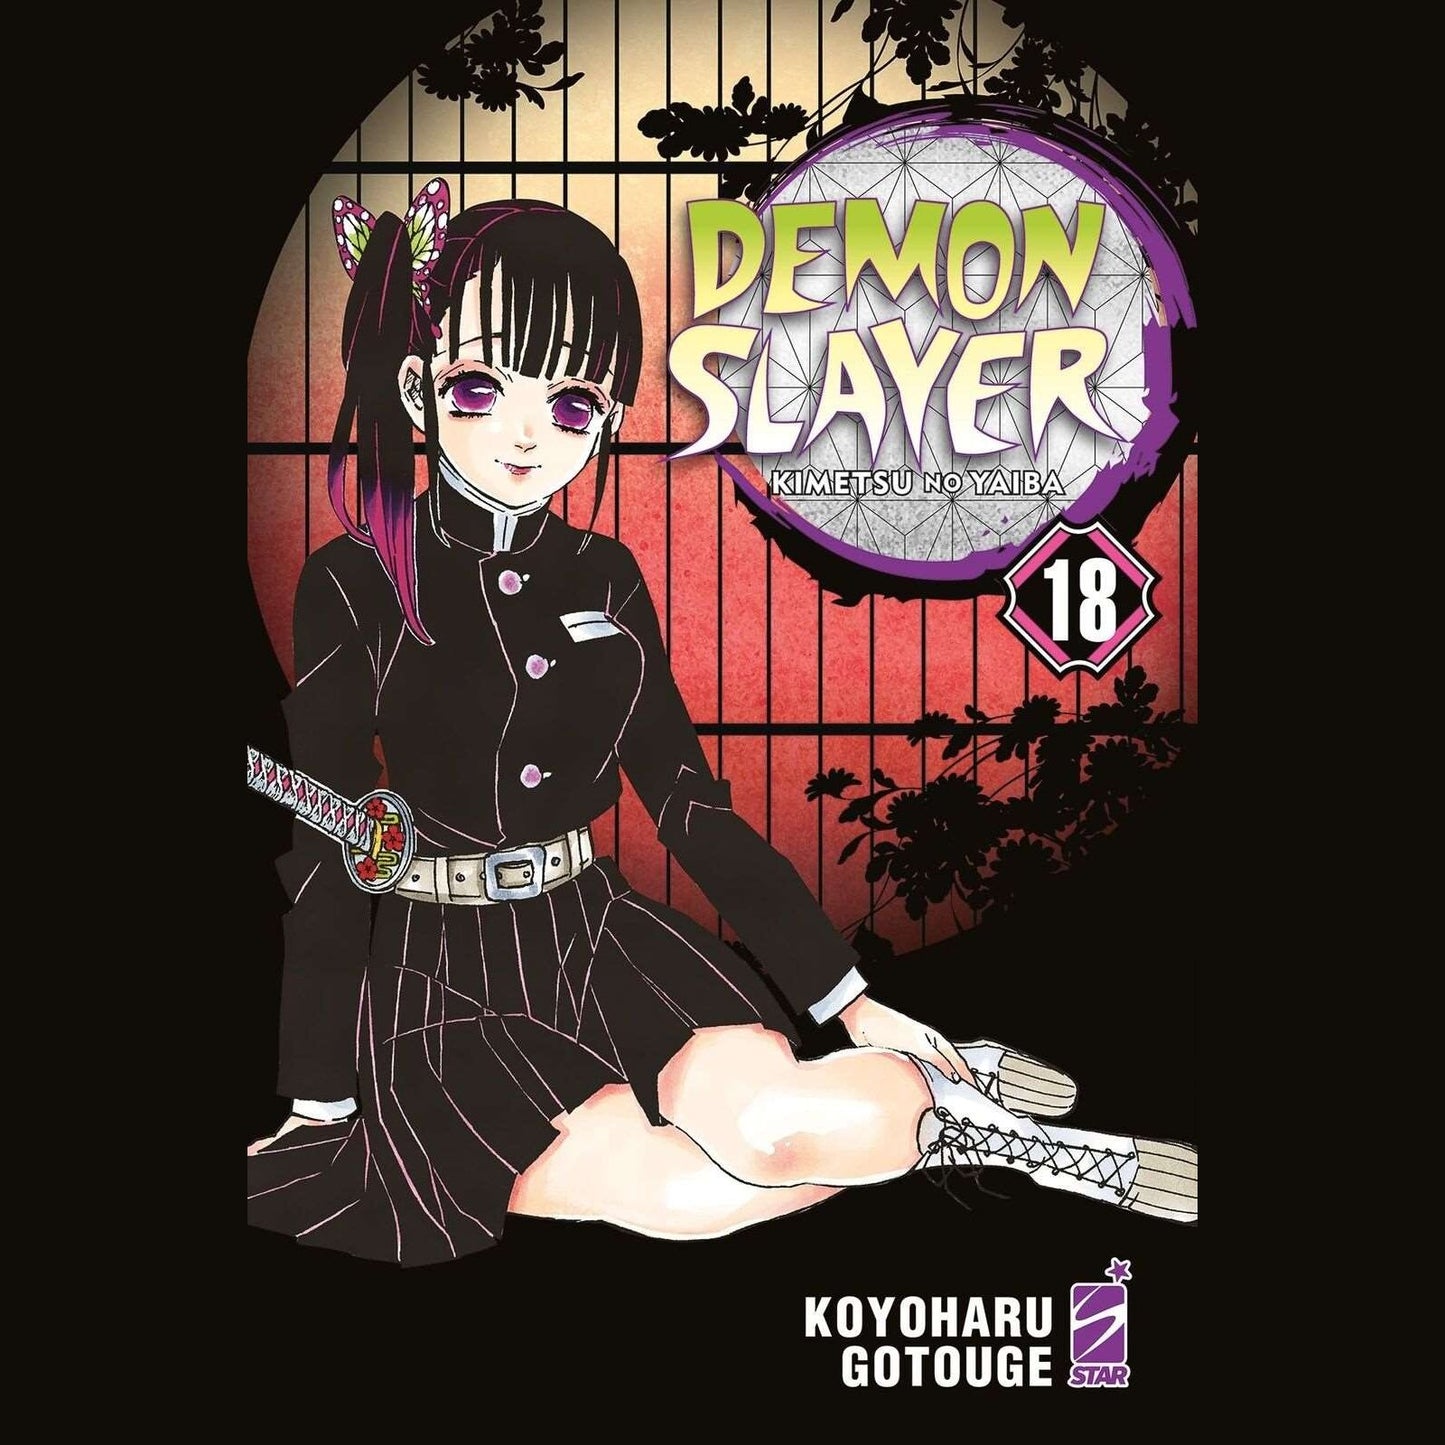 Demon Slayer Kimetsu no Yaiba 18 ITA nerd-pug